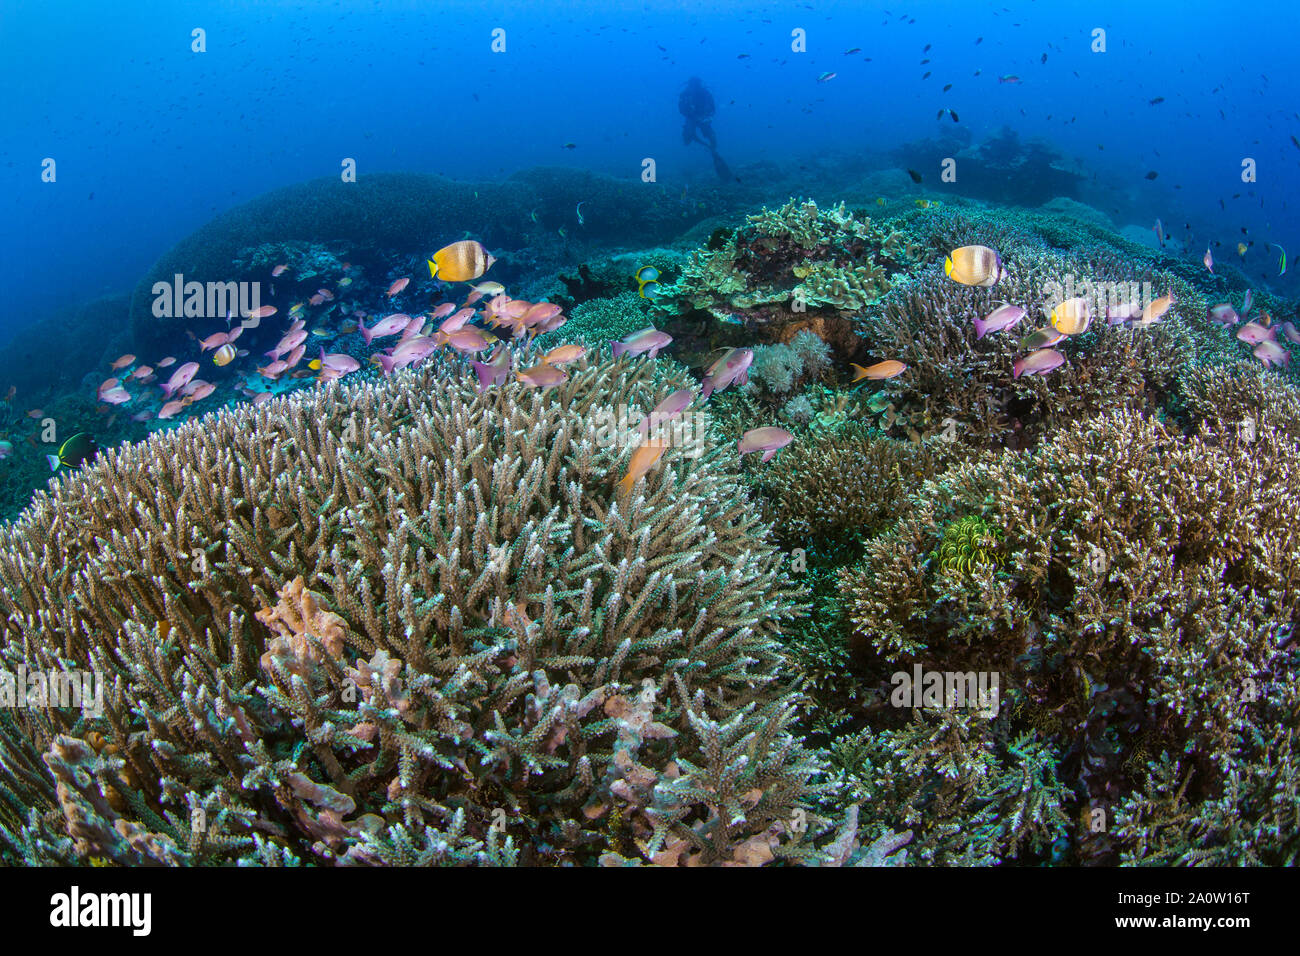 Los jardines de coral sanos con coloridos peces tropicales de arrecife con siluetas de buceo en las aguas azules del fondo. Nusa Lembongan, Bali, Indonesia. Foto de stock